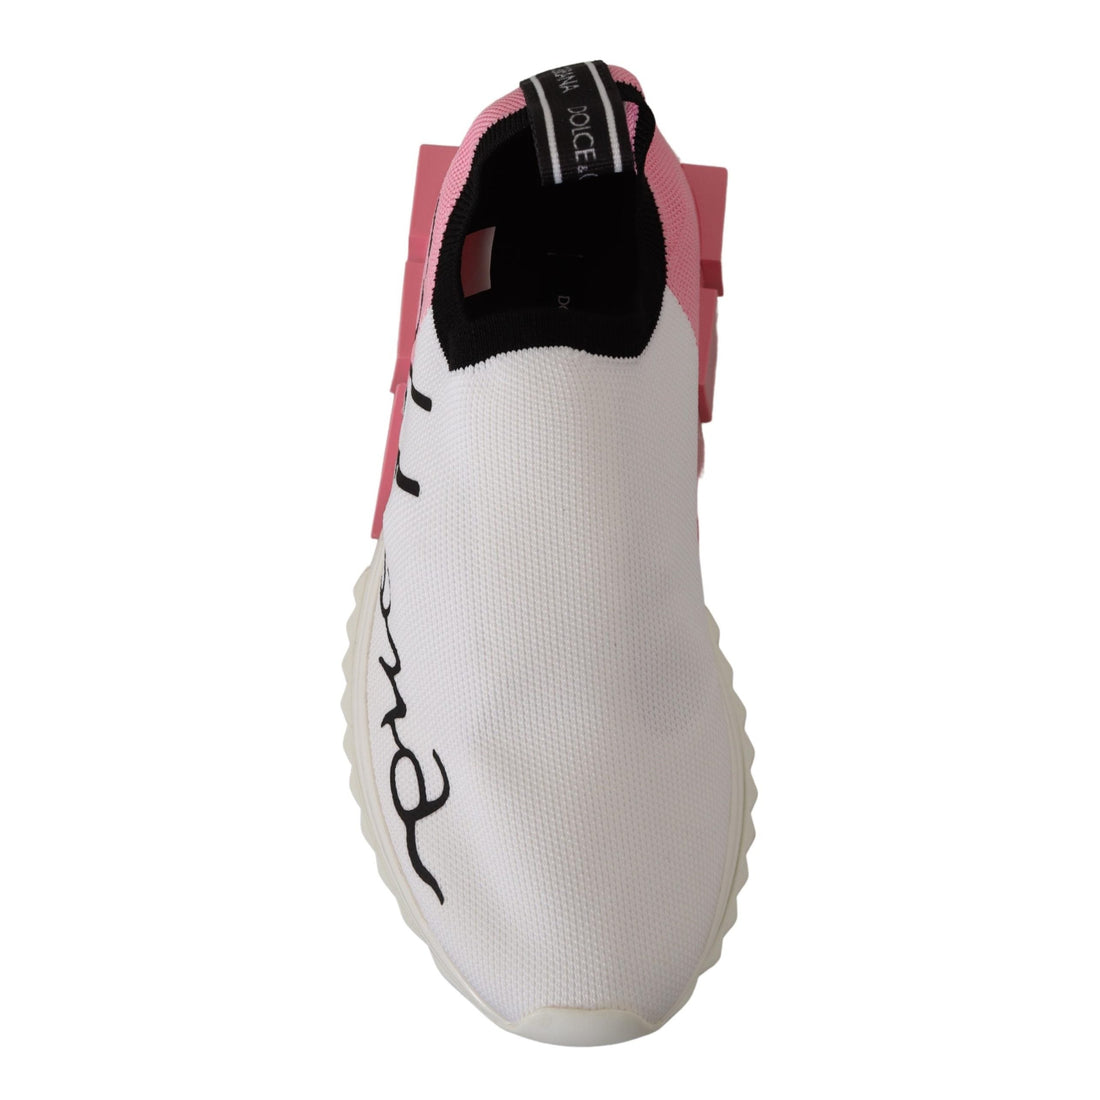 Dolce & Gabbana Elegant Sorrento Slip-On Sneakers in White & Pink